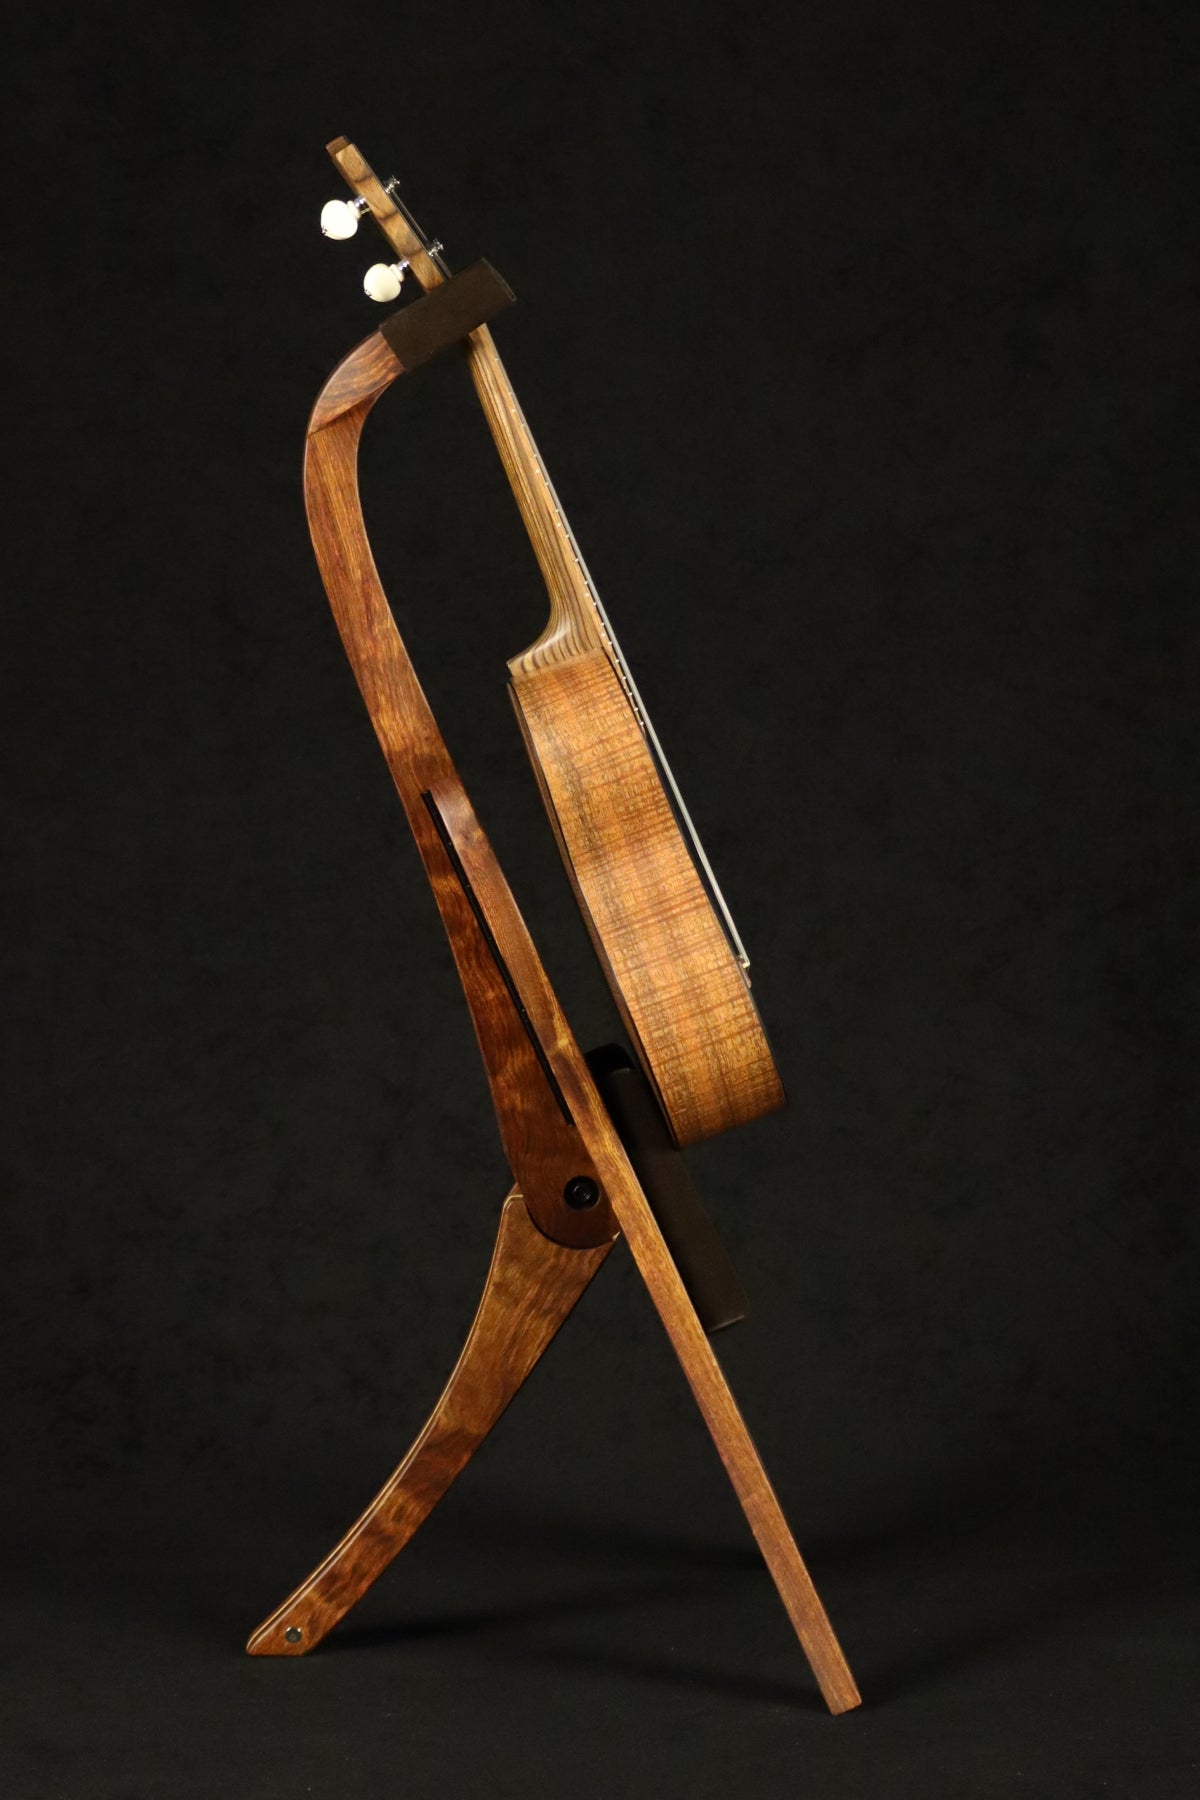 Folding chechen Caribbean rosewood and curly maple wood ukulele floor stand full side image with Martin ukulele